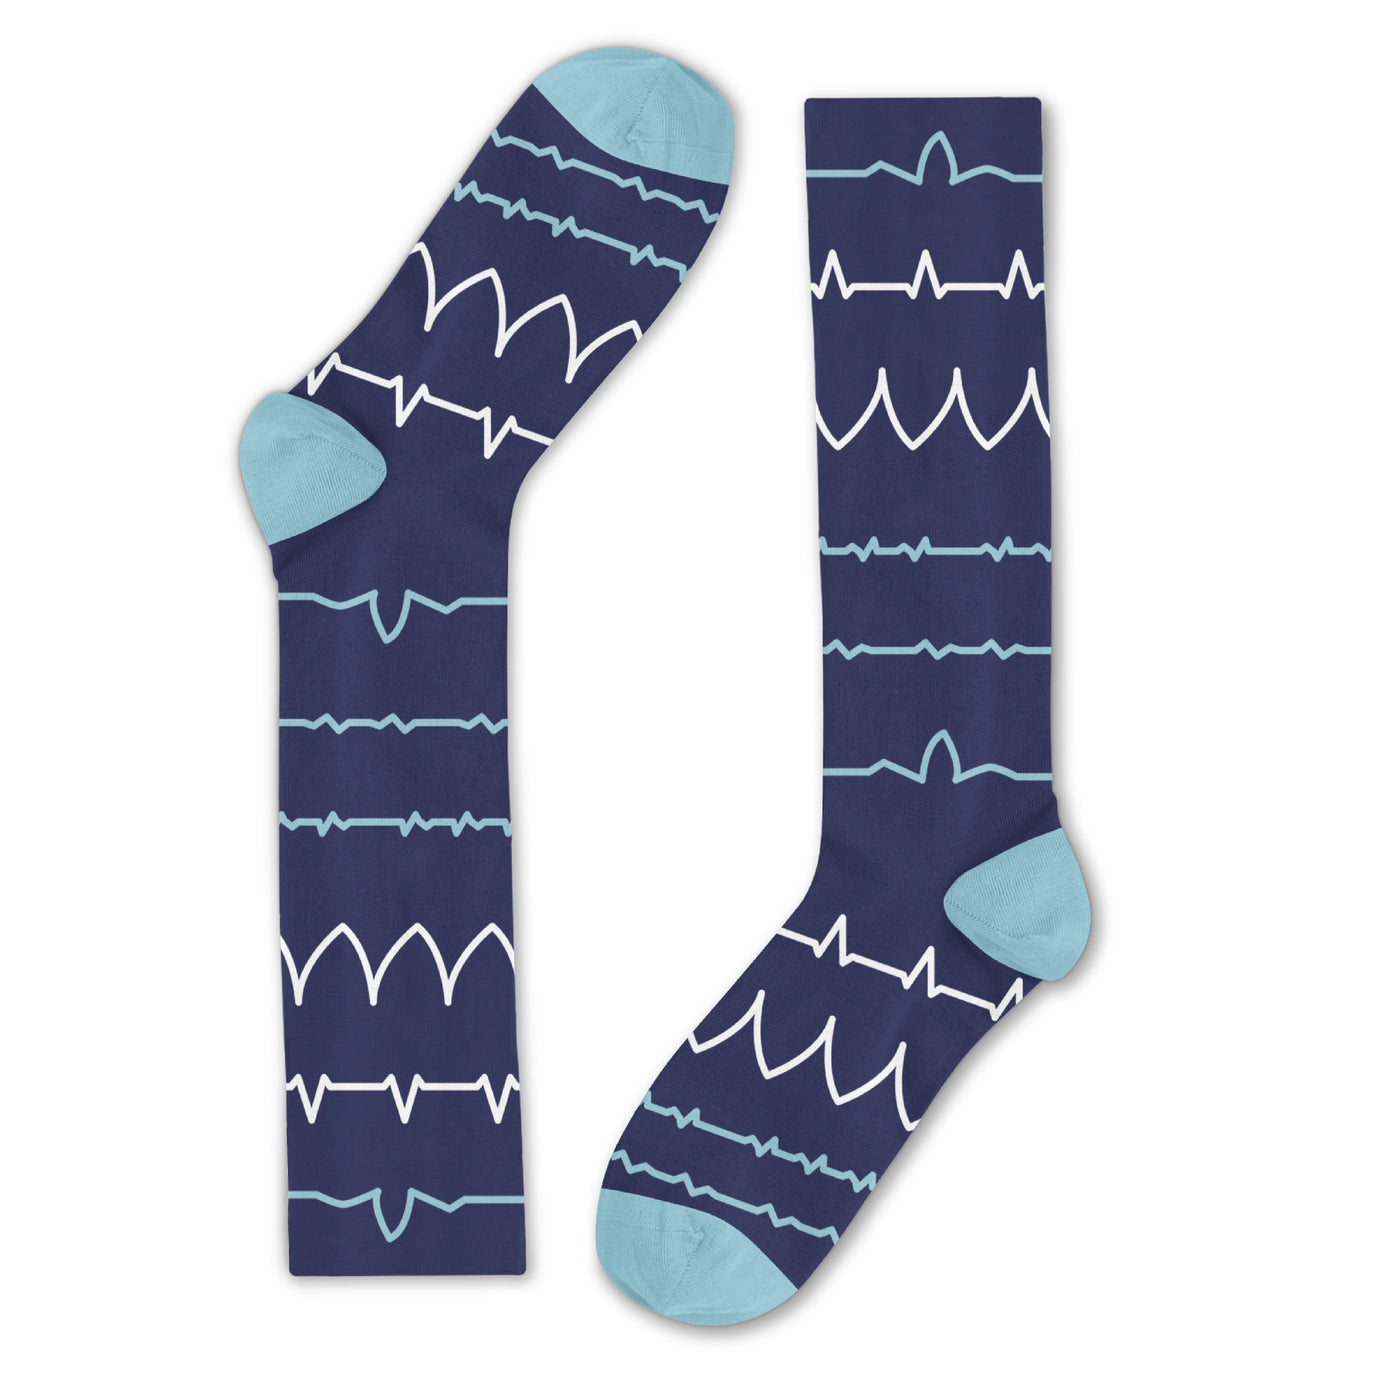 BraceAbility fun nursing compression socks with blue heartbeat pattern